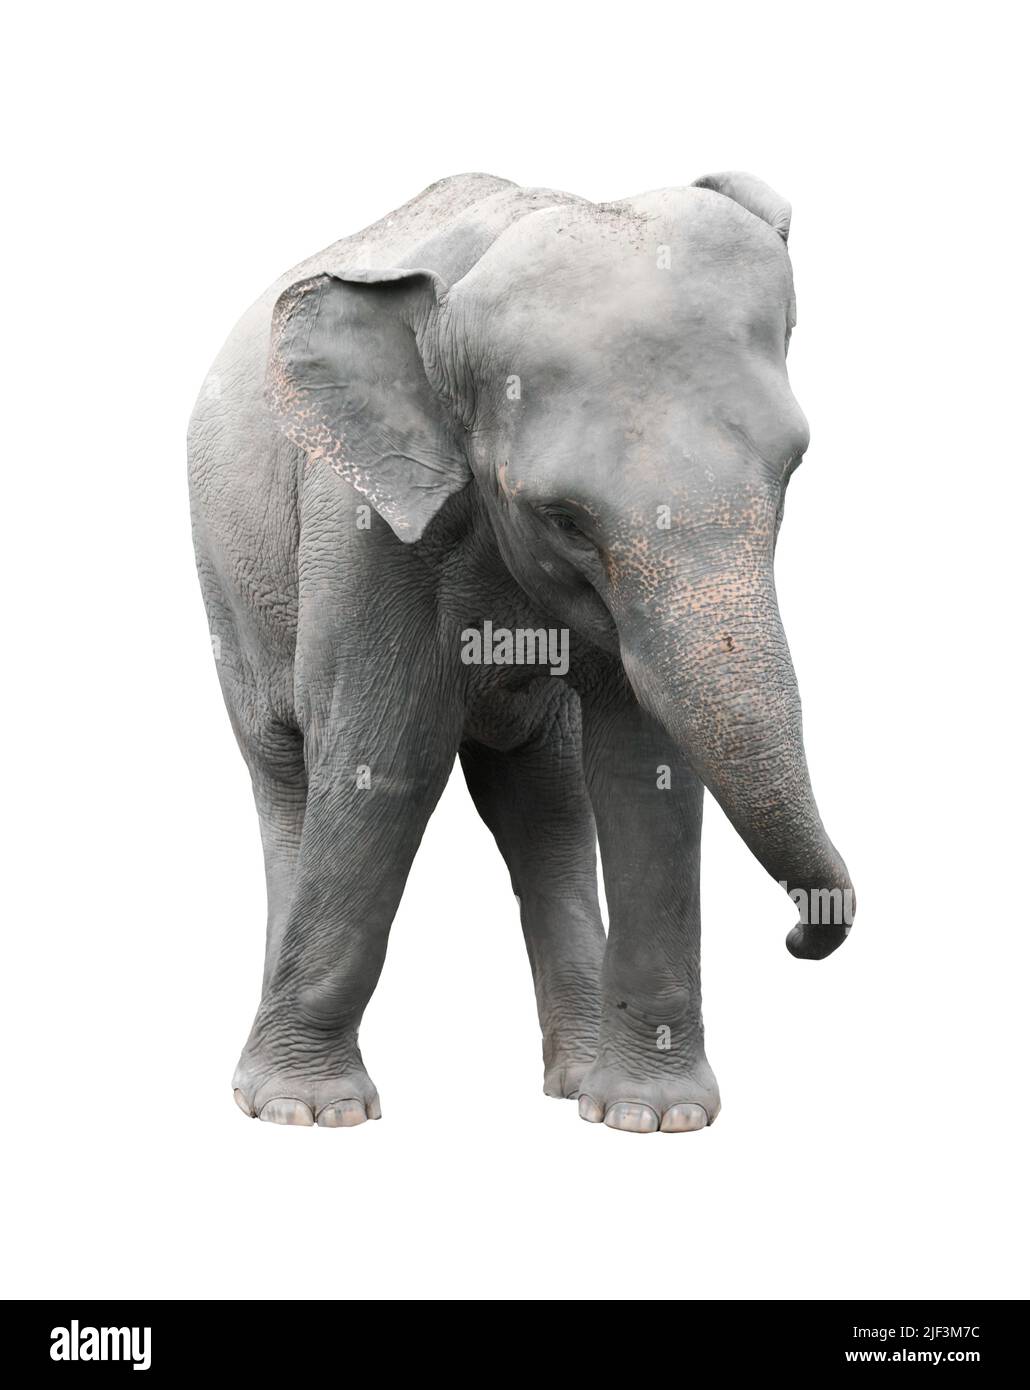 asia elephant isolated on white background Stock Photo